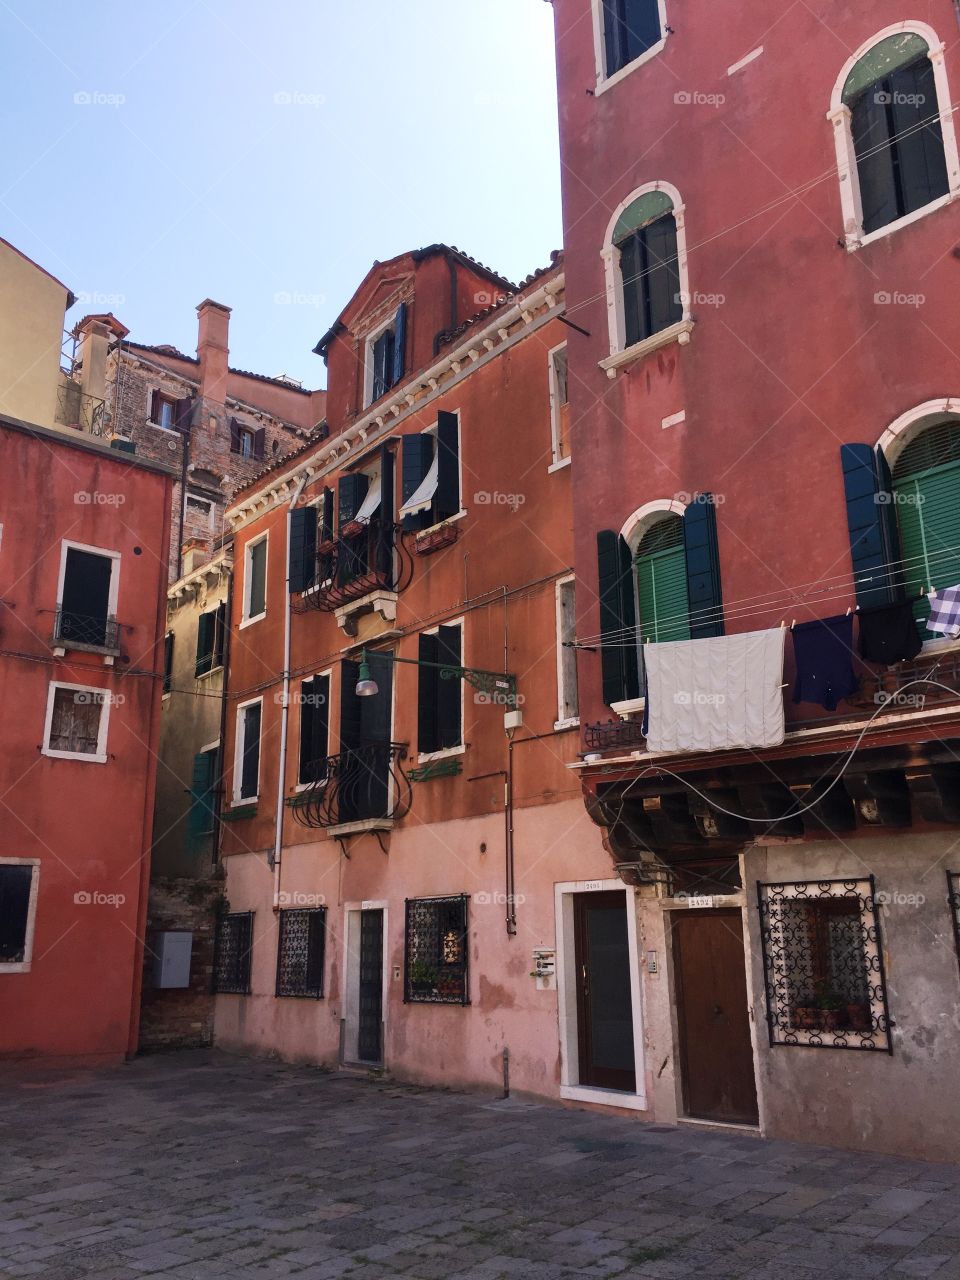 Architecture in Venice - Italy 